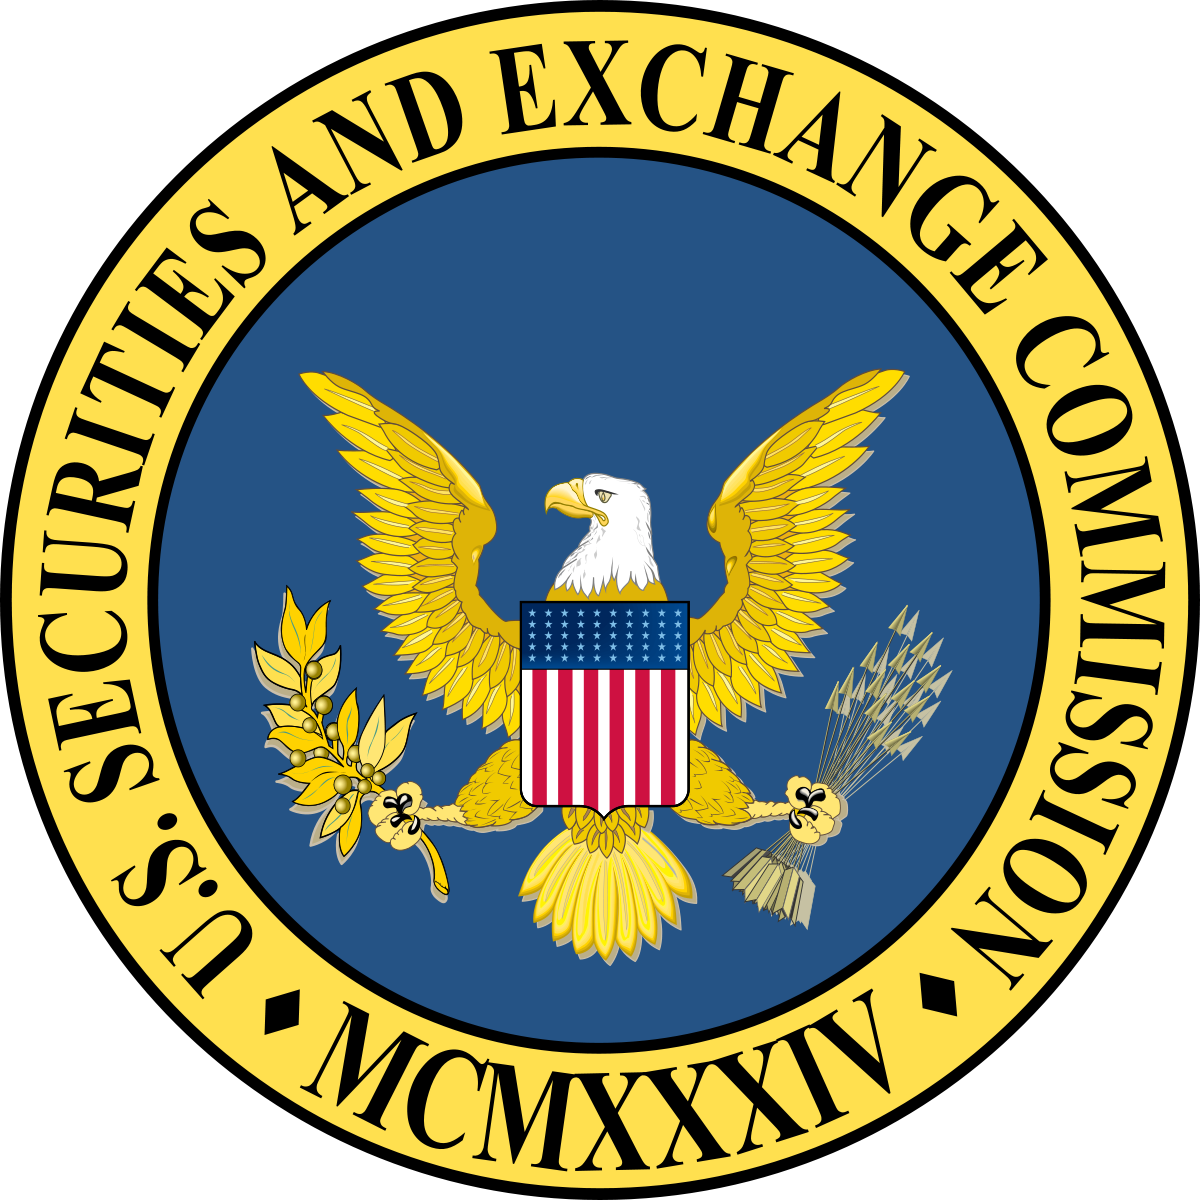 Комиссия по ценным бумагам США. Комиссия по ценным бумагам и биржам sec. Комиссия по ценным бумага США лого. Комиссия по ценным бумагам и биржам США (sec) логотип.